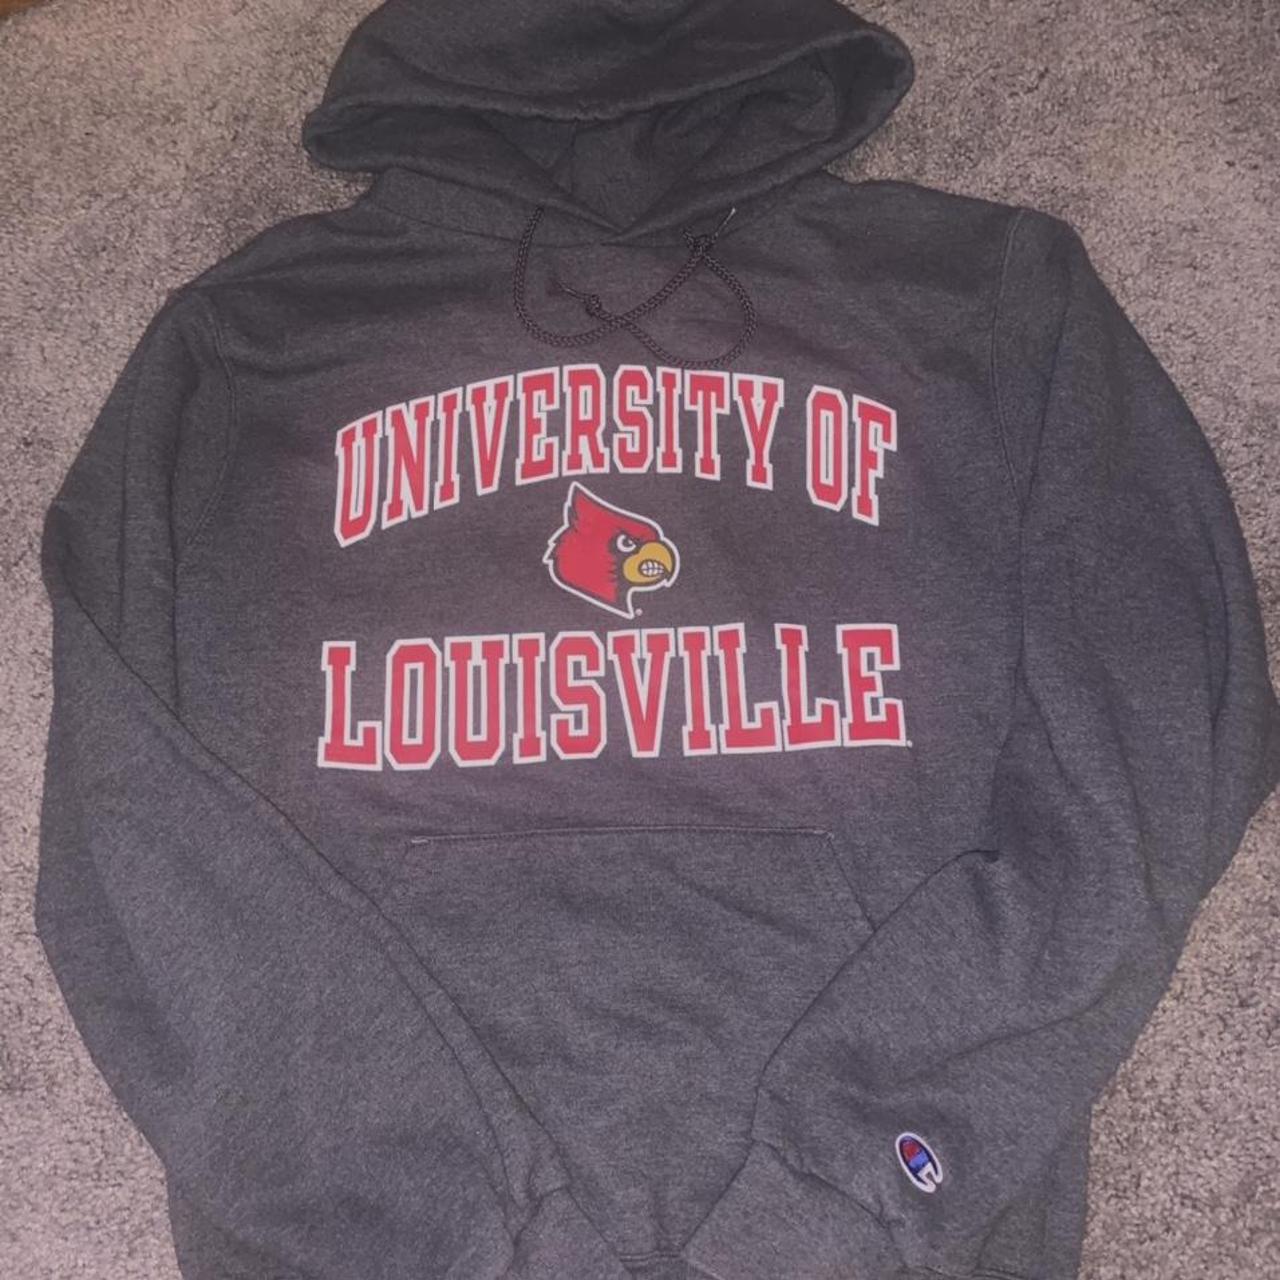 University of Louisville Women's Hooded Sweatshirt